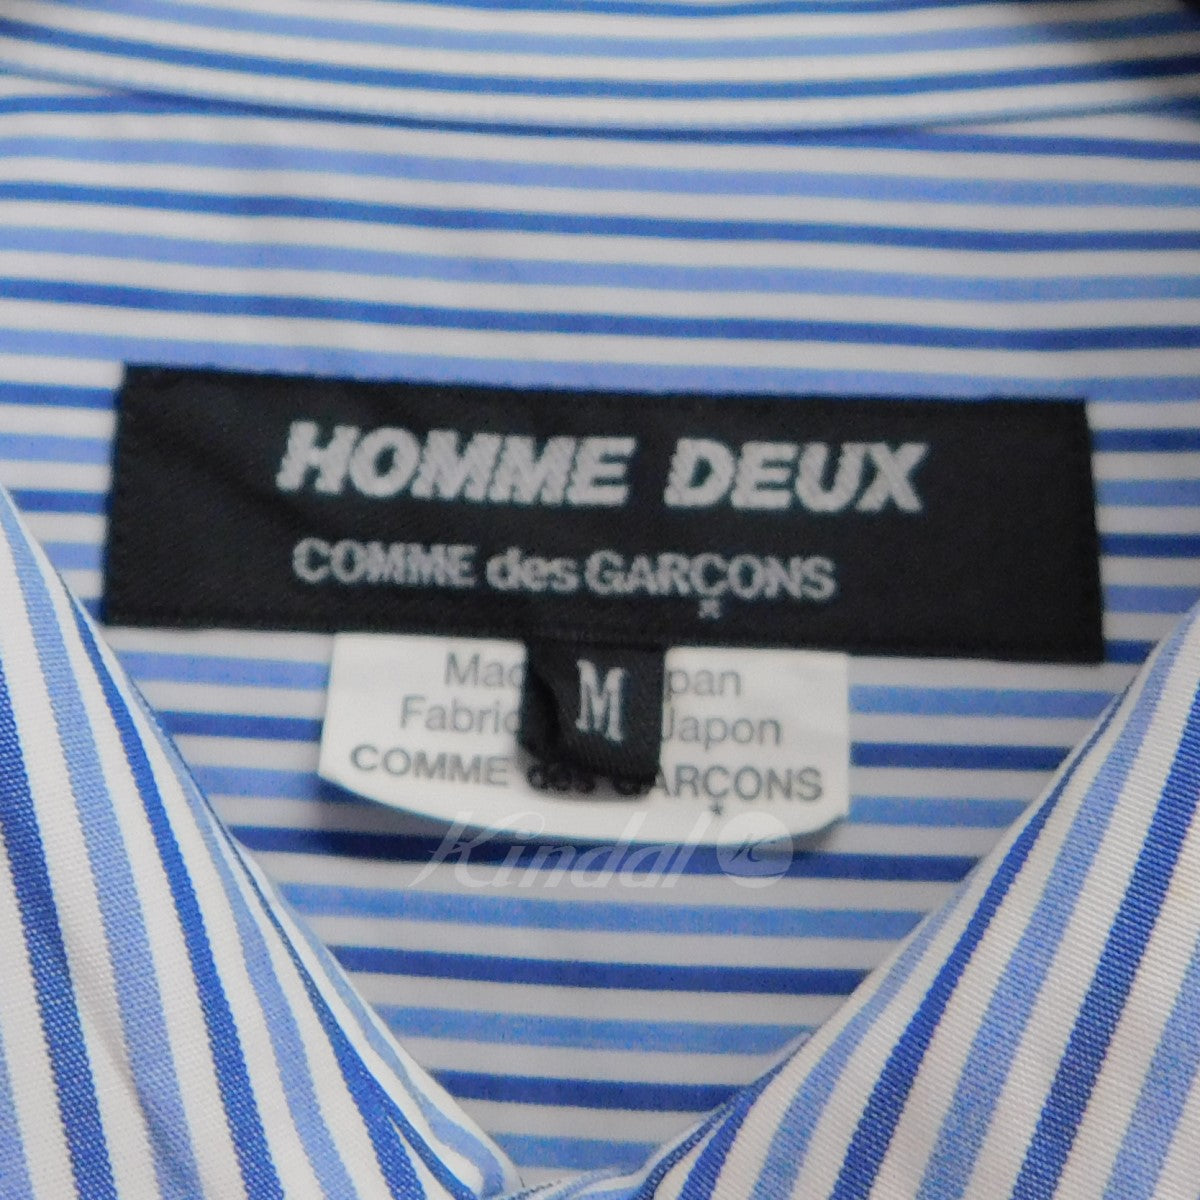 COMME des GARCONS HOMME DEUX(コムデギャルソンオムドゥ) 切替 ...